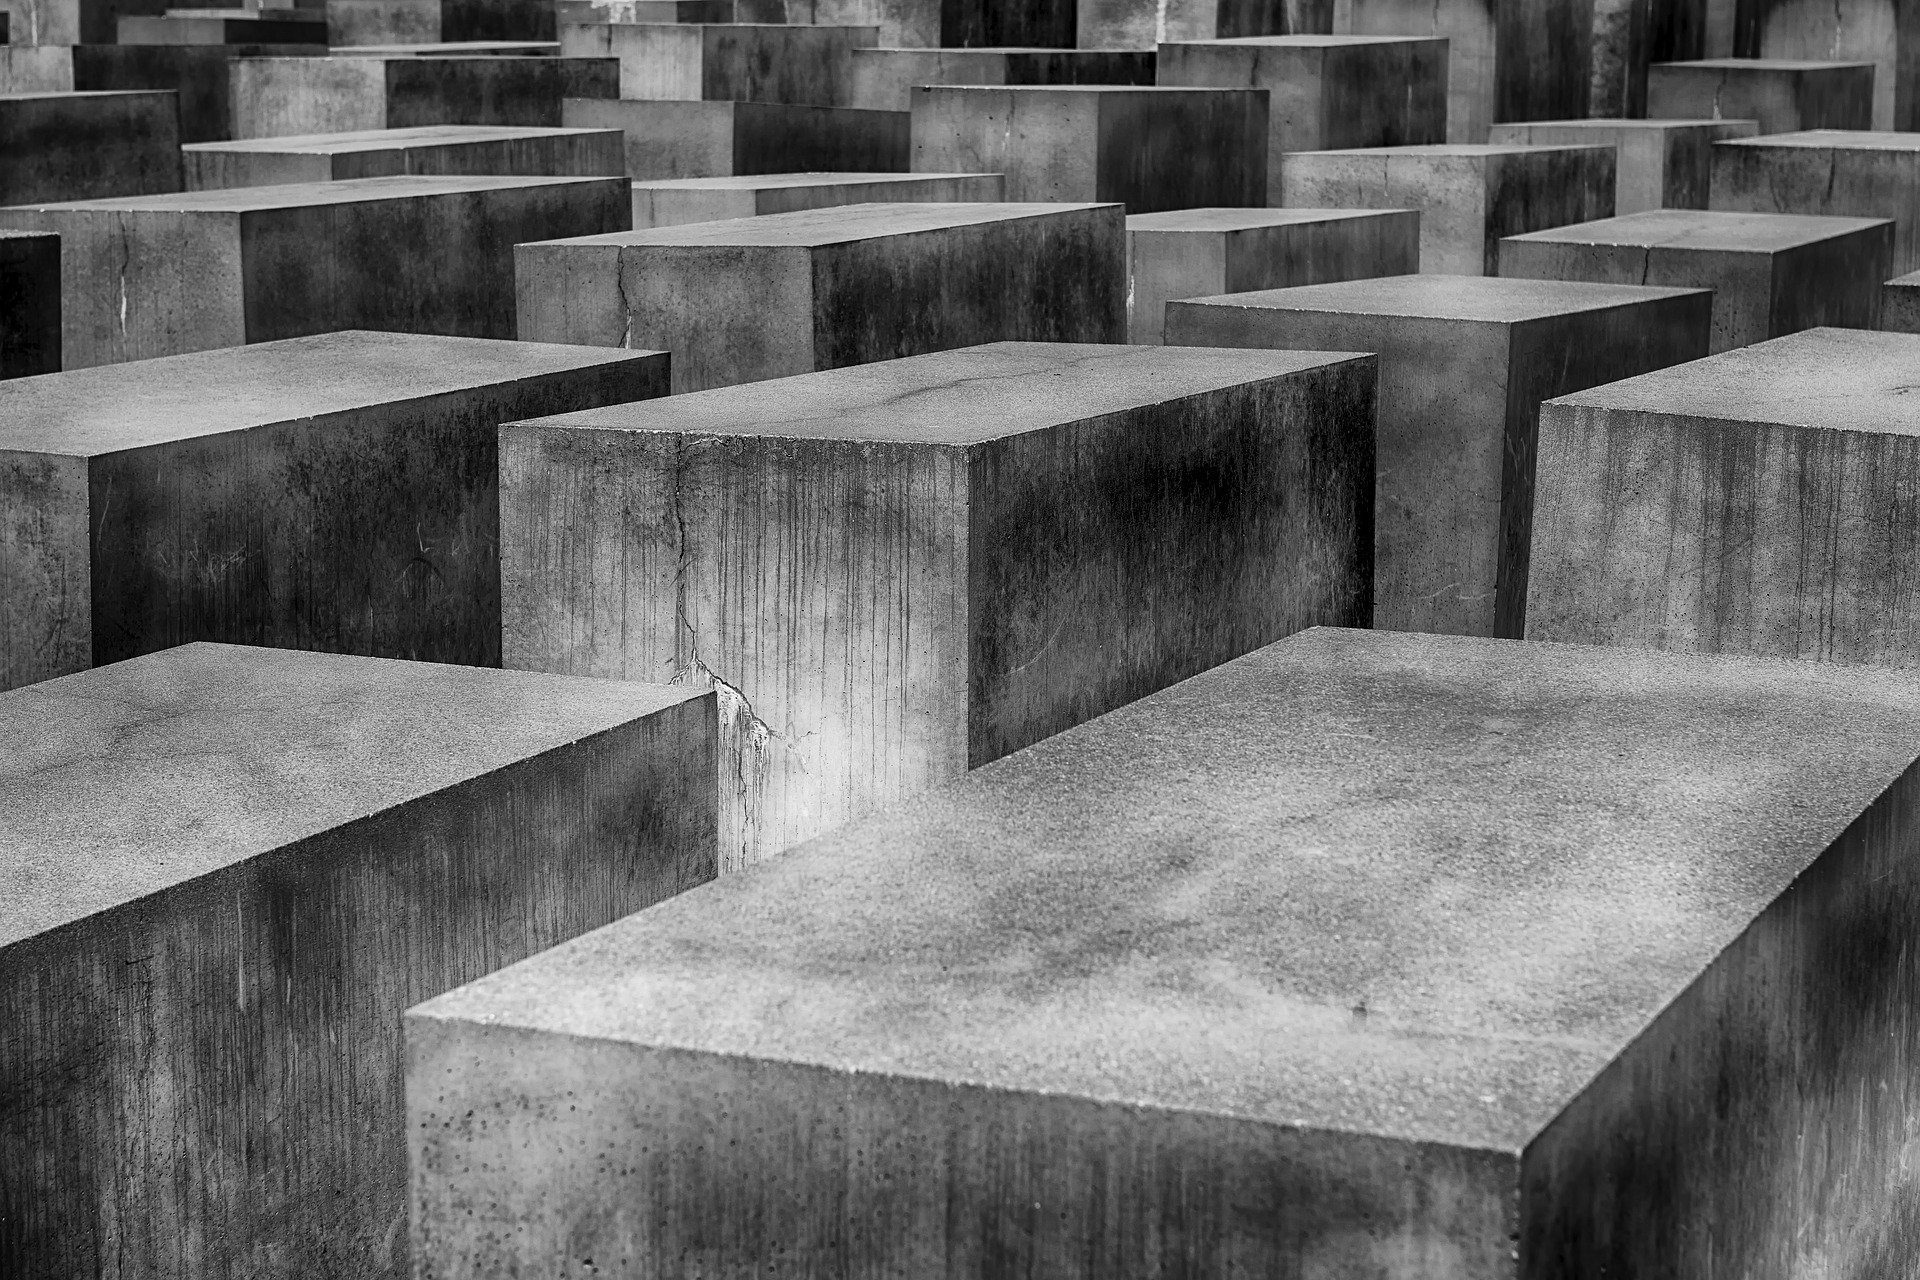 Holocaust Denkmal (c) Bild von Markus Christ auf Pixabay